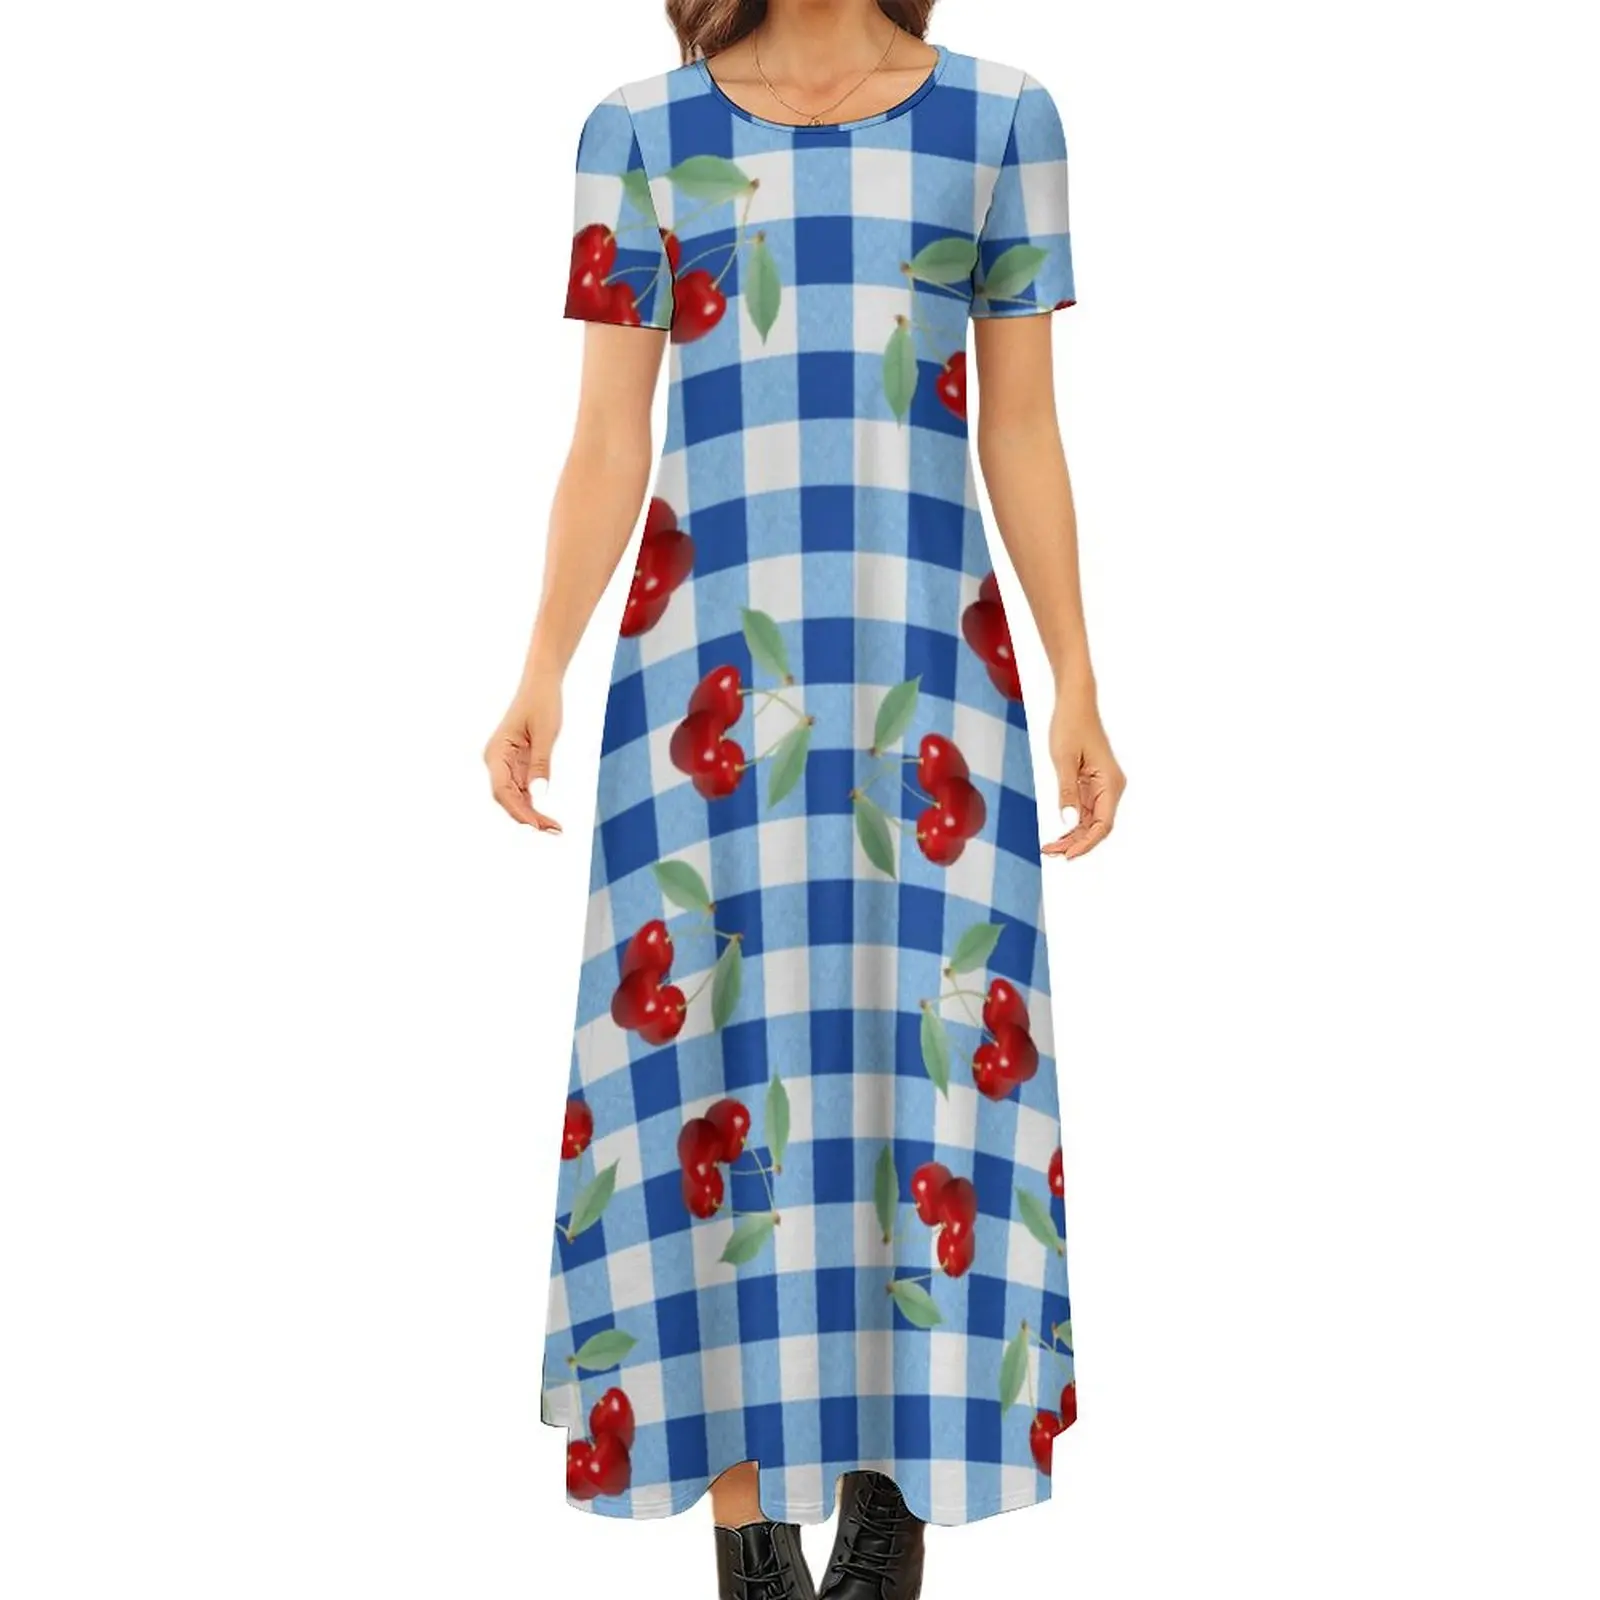 

Женское платье-макси в стиле ретро, синее клетчатое платье с принтом вишни, с коротким рукавом, в уличном стиле, длинное пляжное платье в стиле бохо, большие размеры